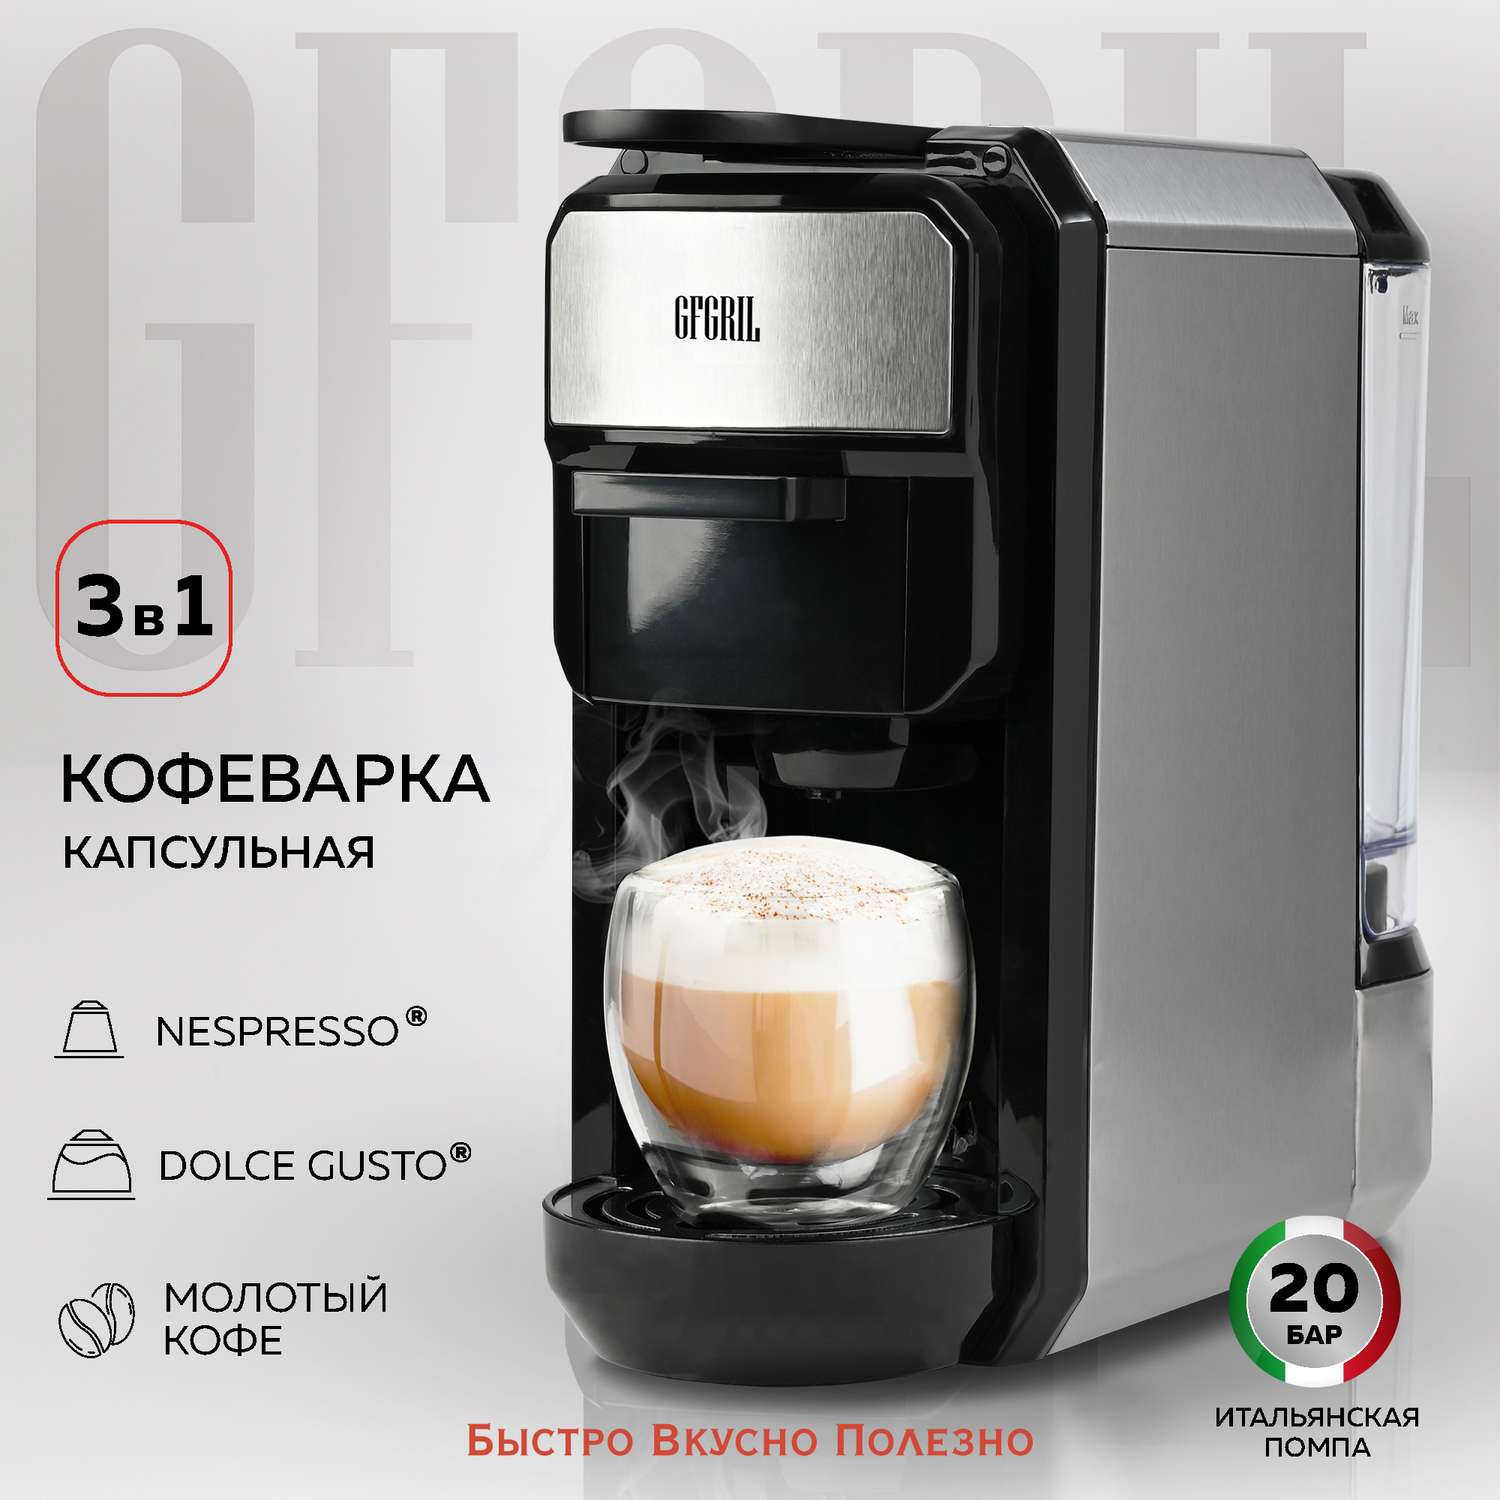 Кофеварка GFGRIL Мультикапсульная 3 в 1 GFC-C300 для молотого кофе и капсул типа Nespresso и Dolce Gusto - фото 1